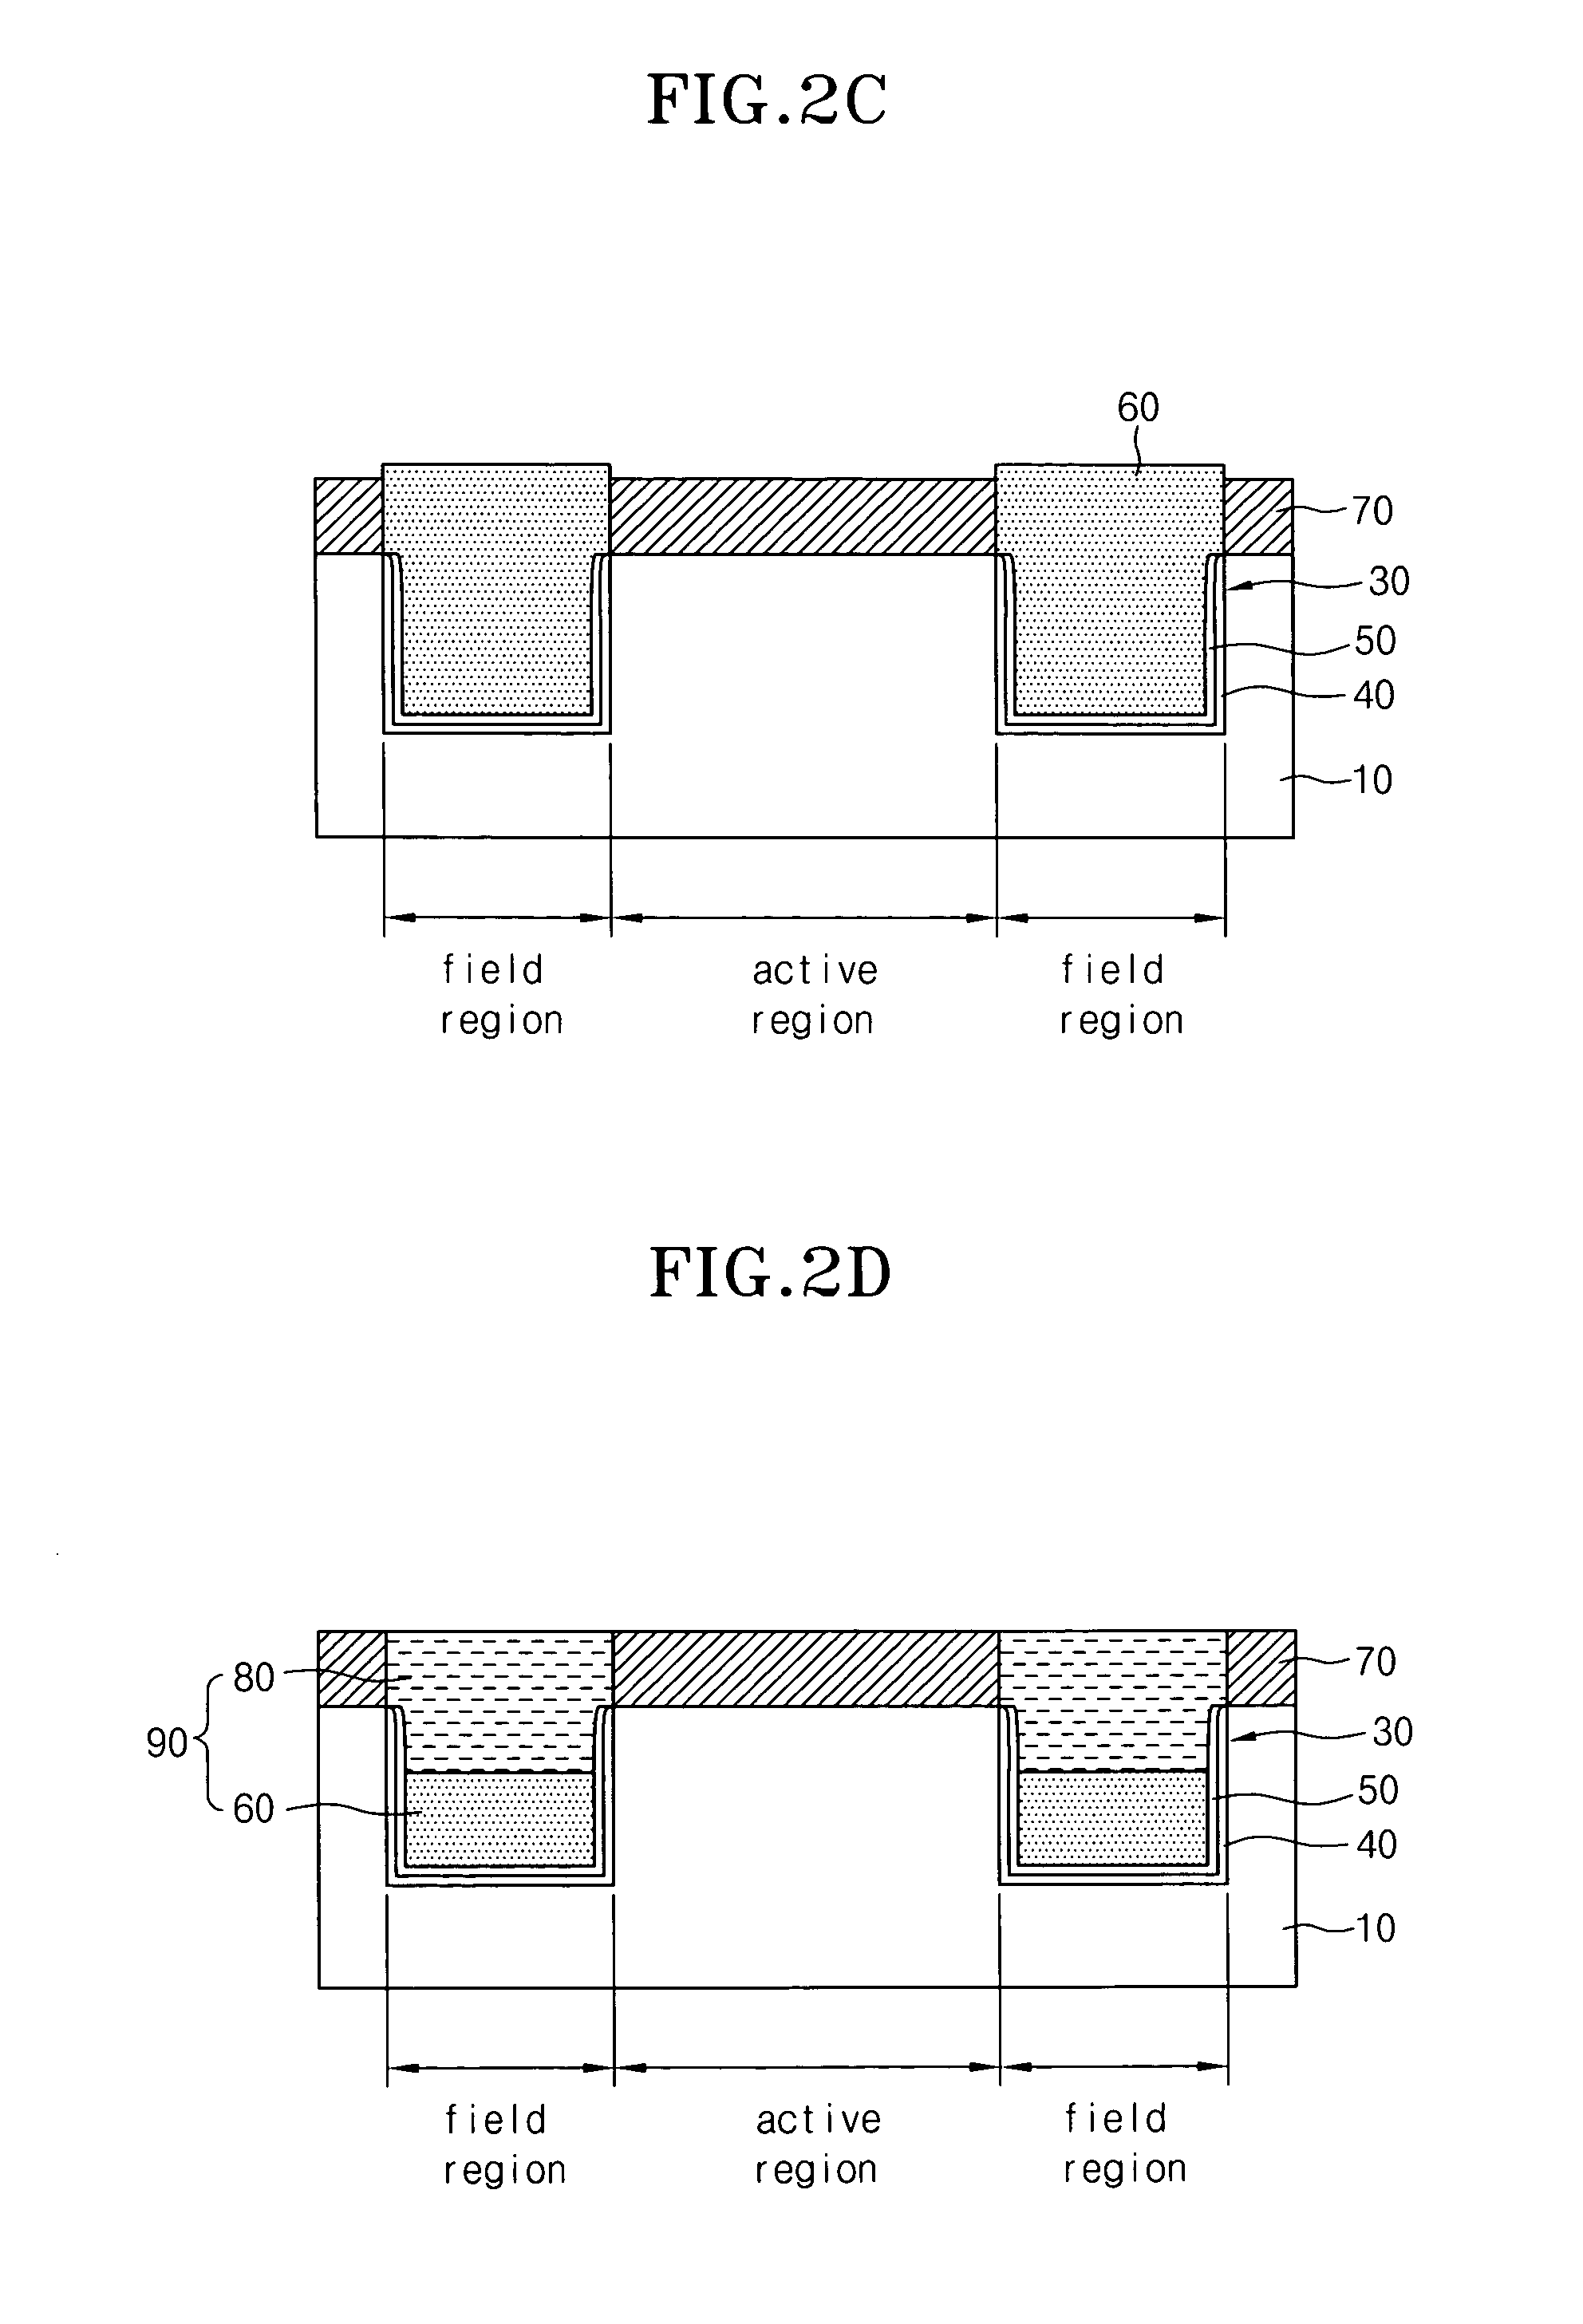 Method of forming fin transistor